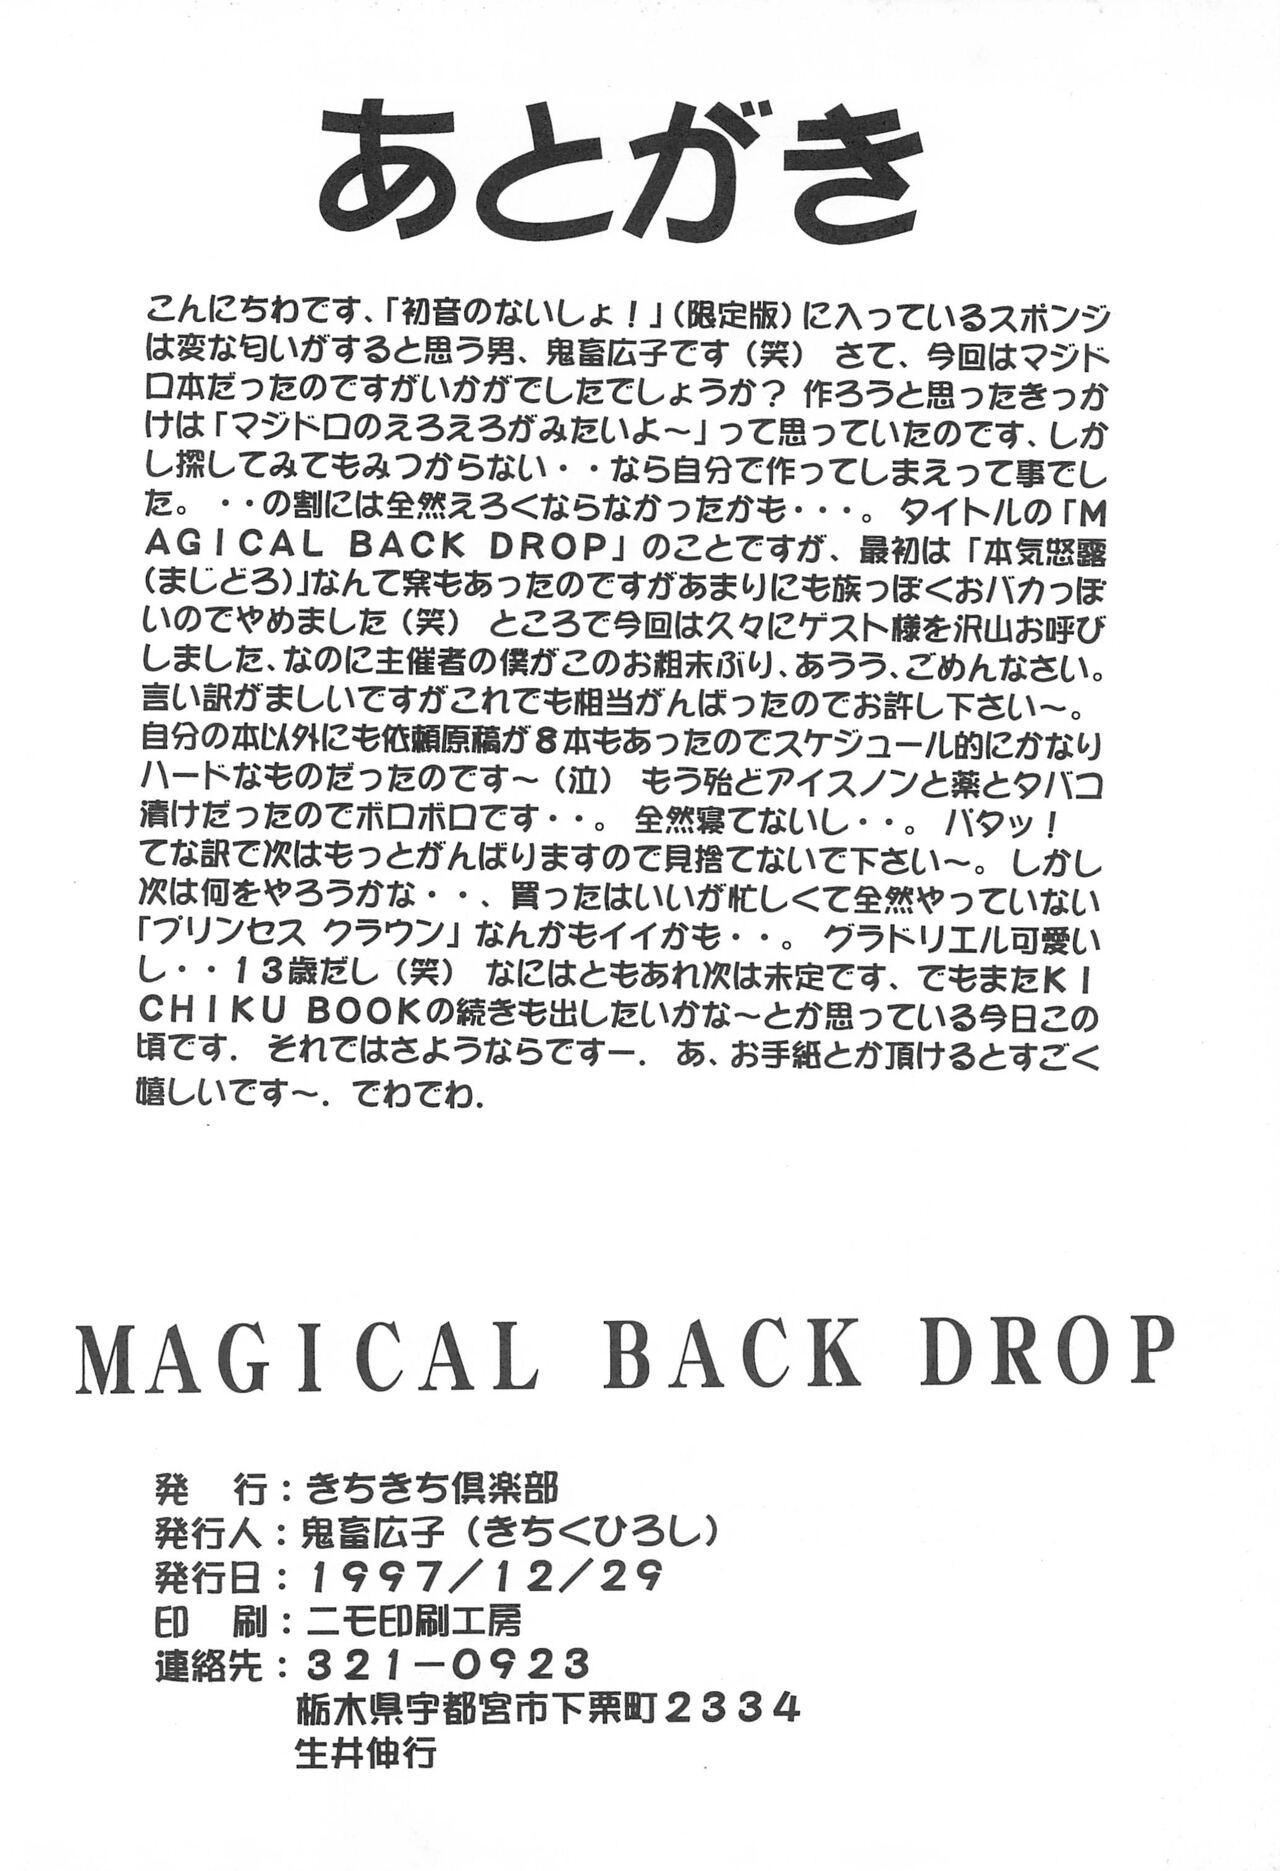 MAGICAL BACK DROP 23